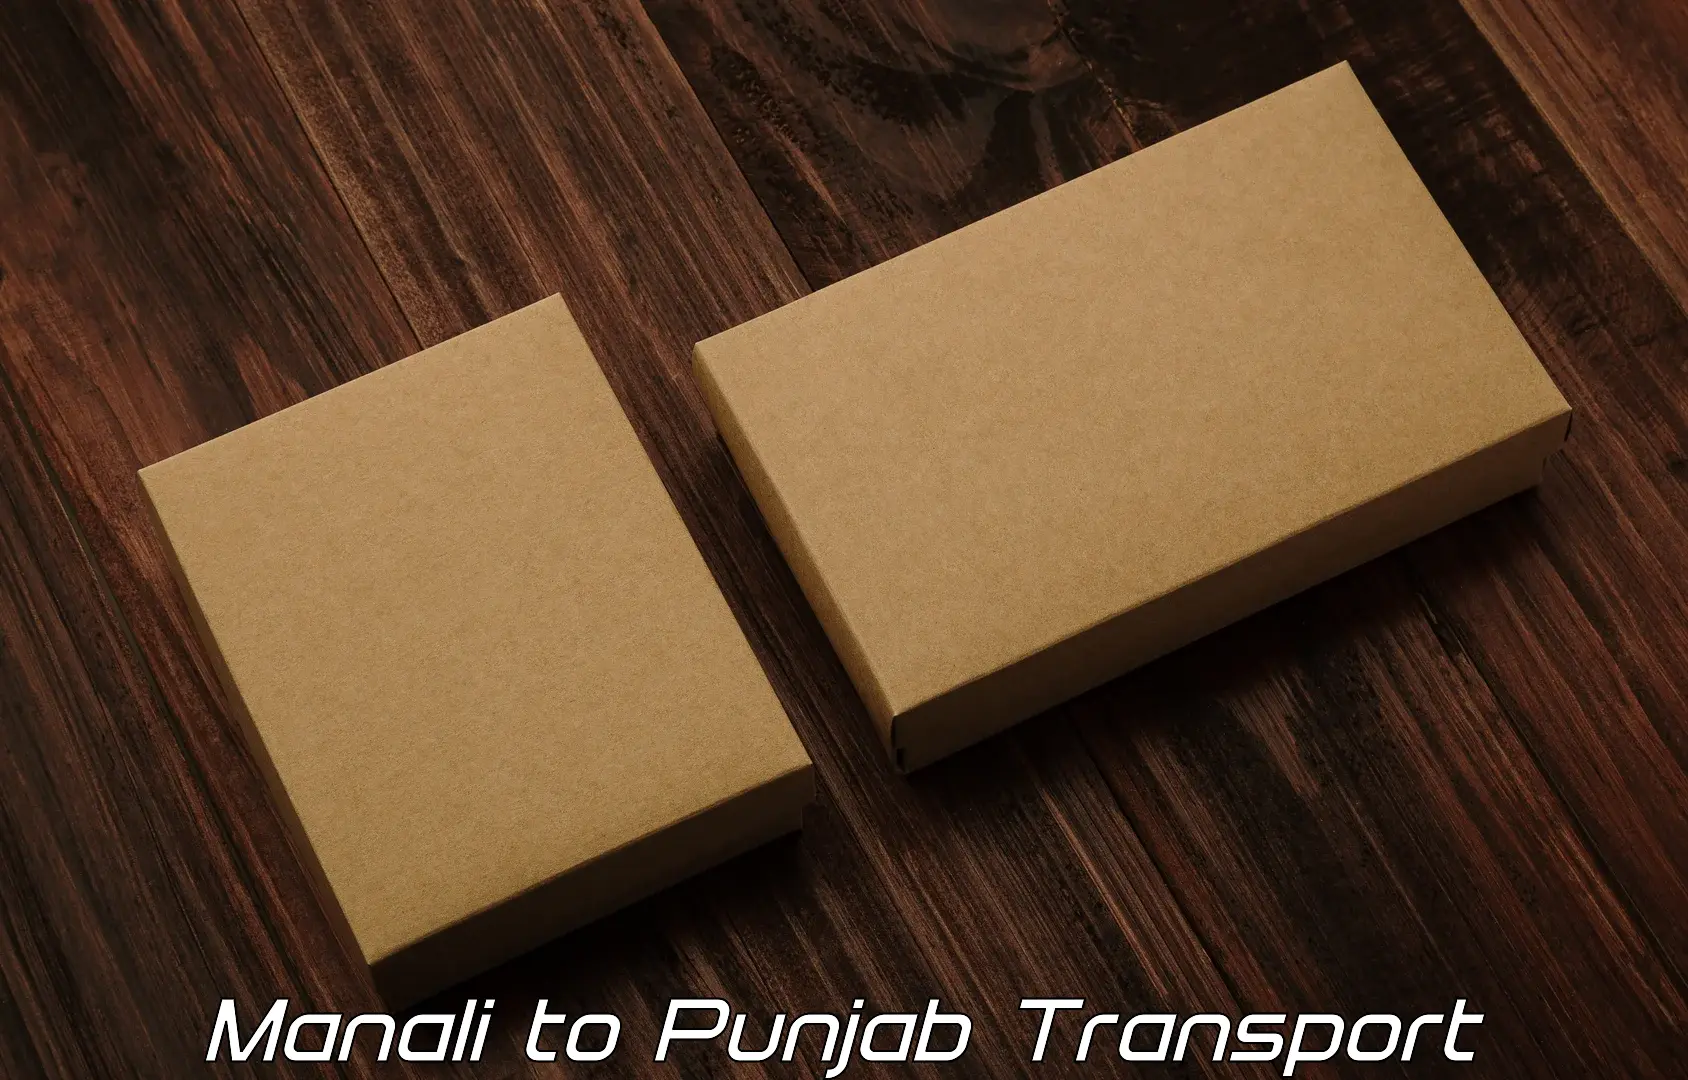 Shipping partner Manali to Punjab